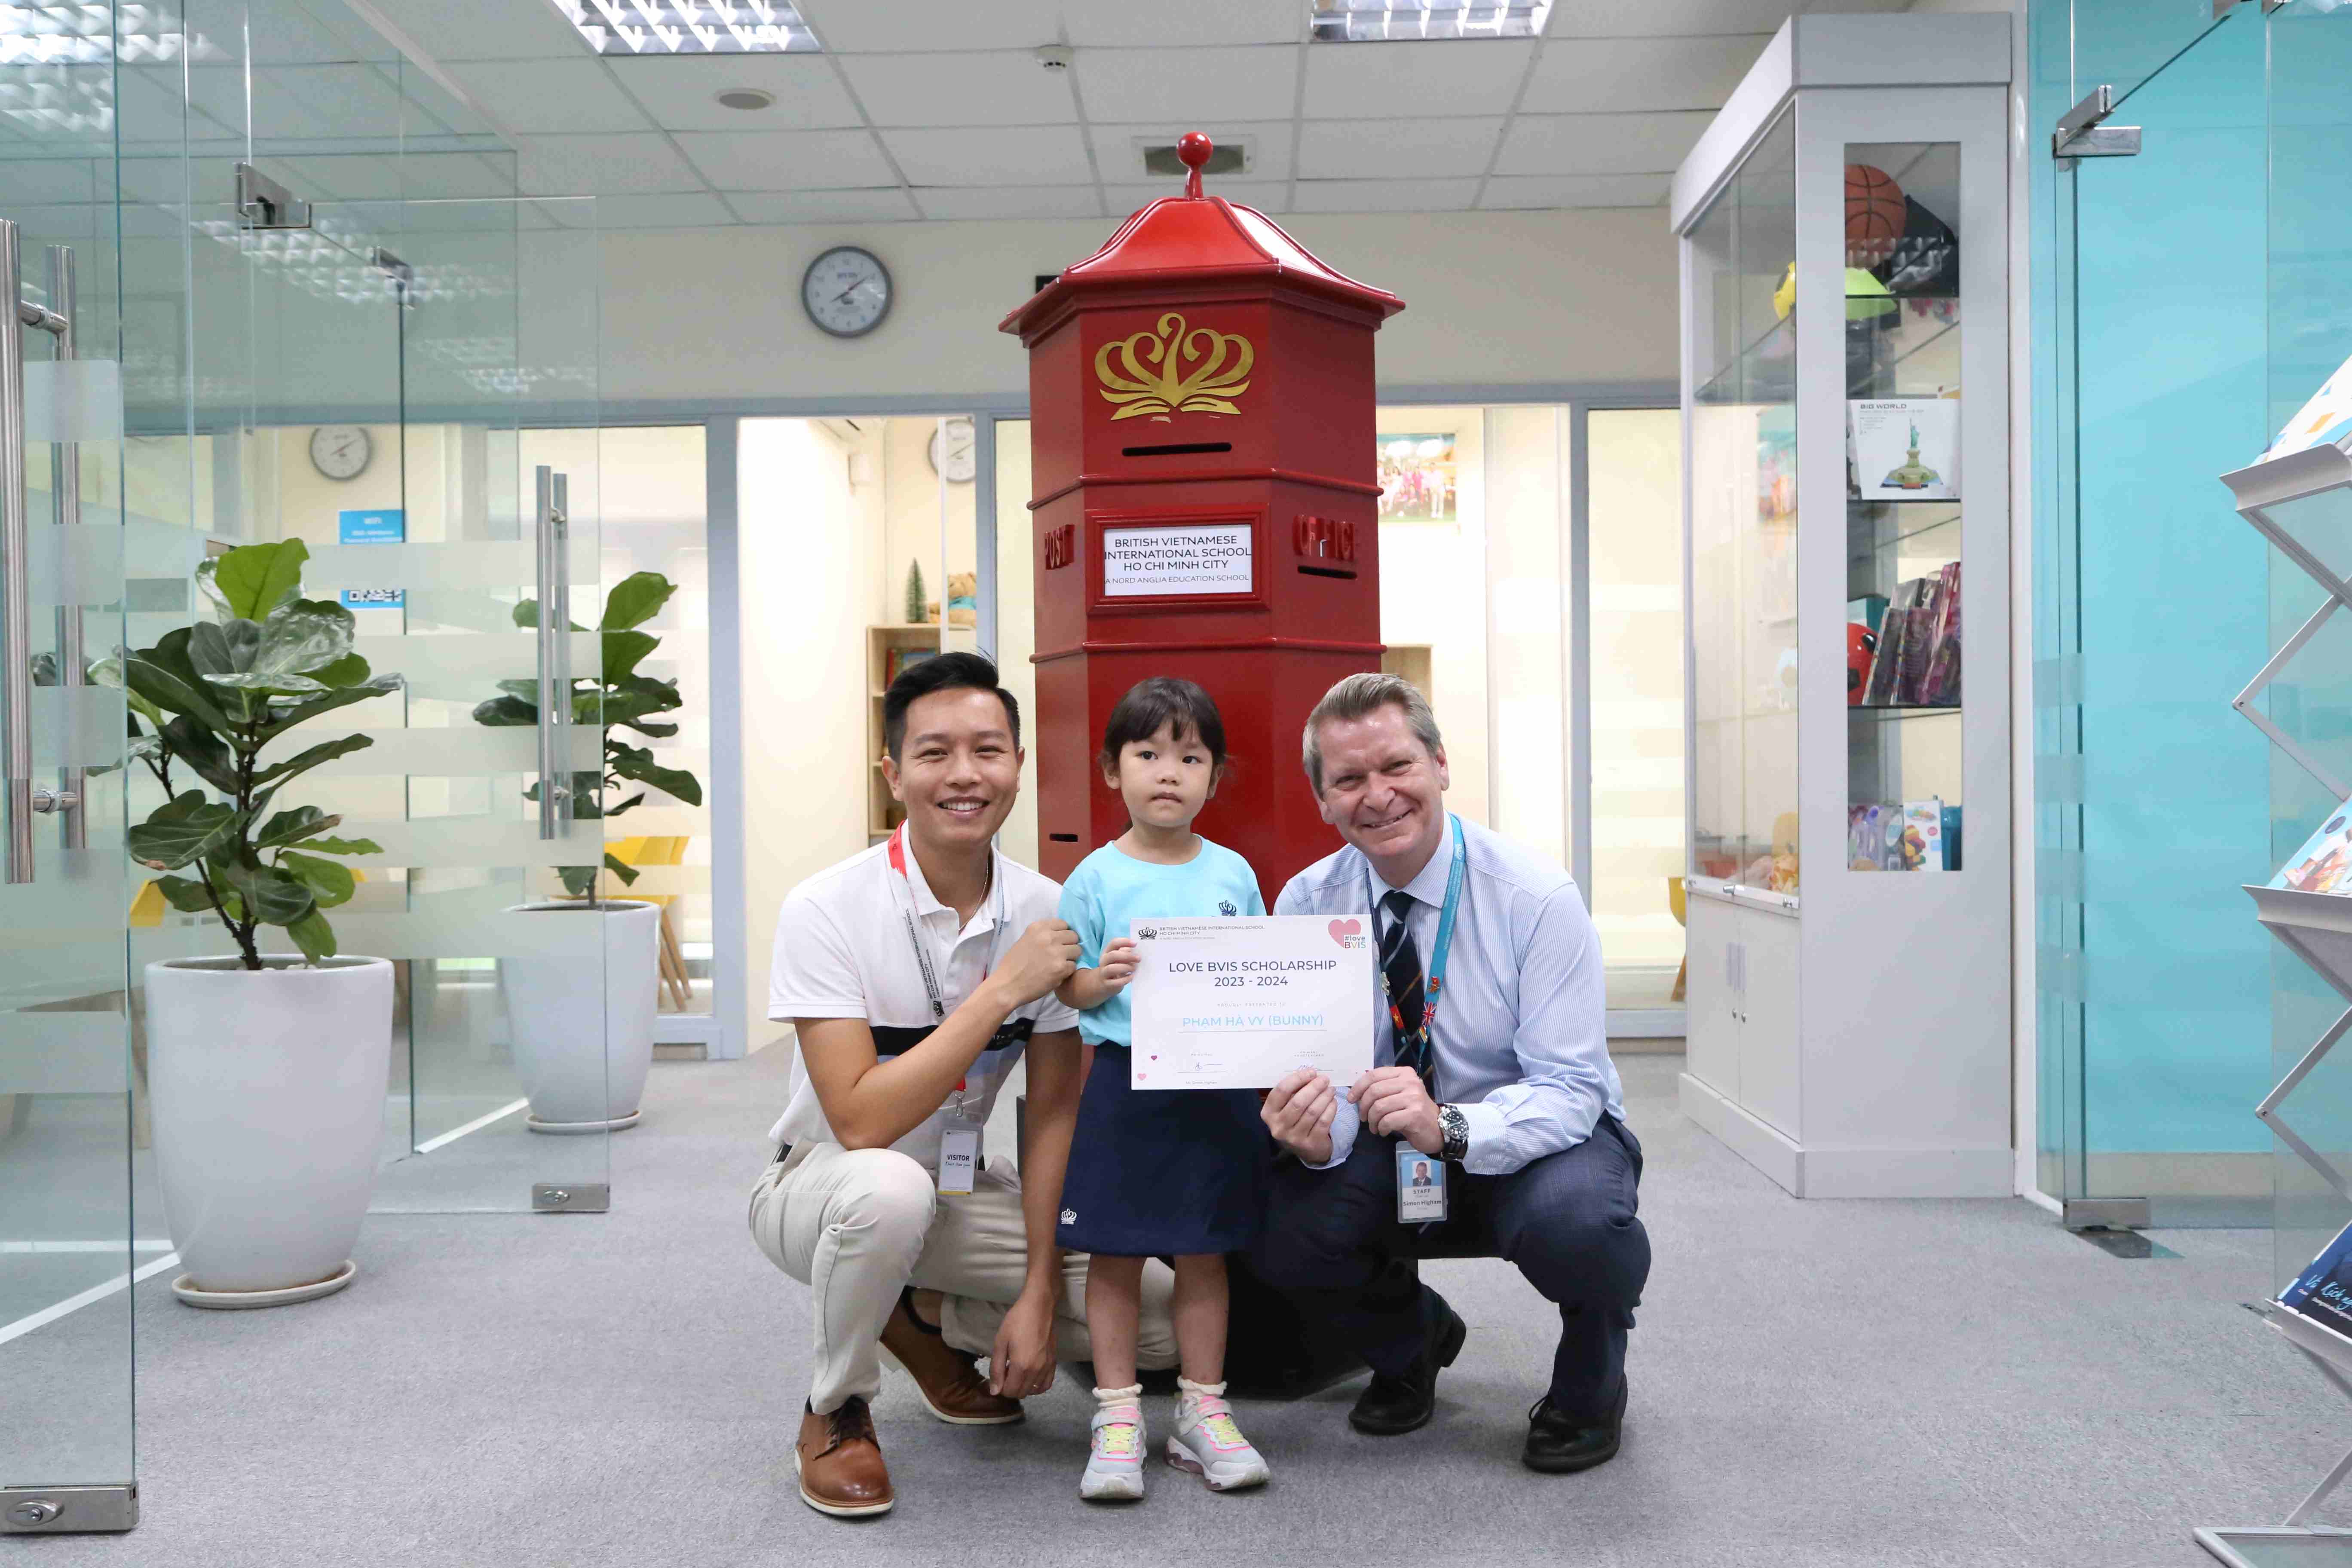 Chúc mừng bé Hà Vy (Bunny) đã giành được học bổng LoveBVIS cho năm học 2023-2024 - Congratulations to Ha Vy Bunny for being awarded the LoveBVIS Scholarship